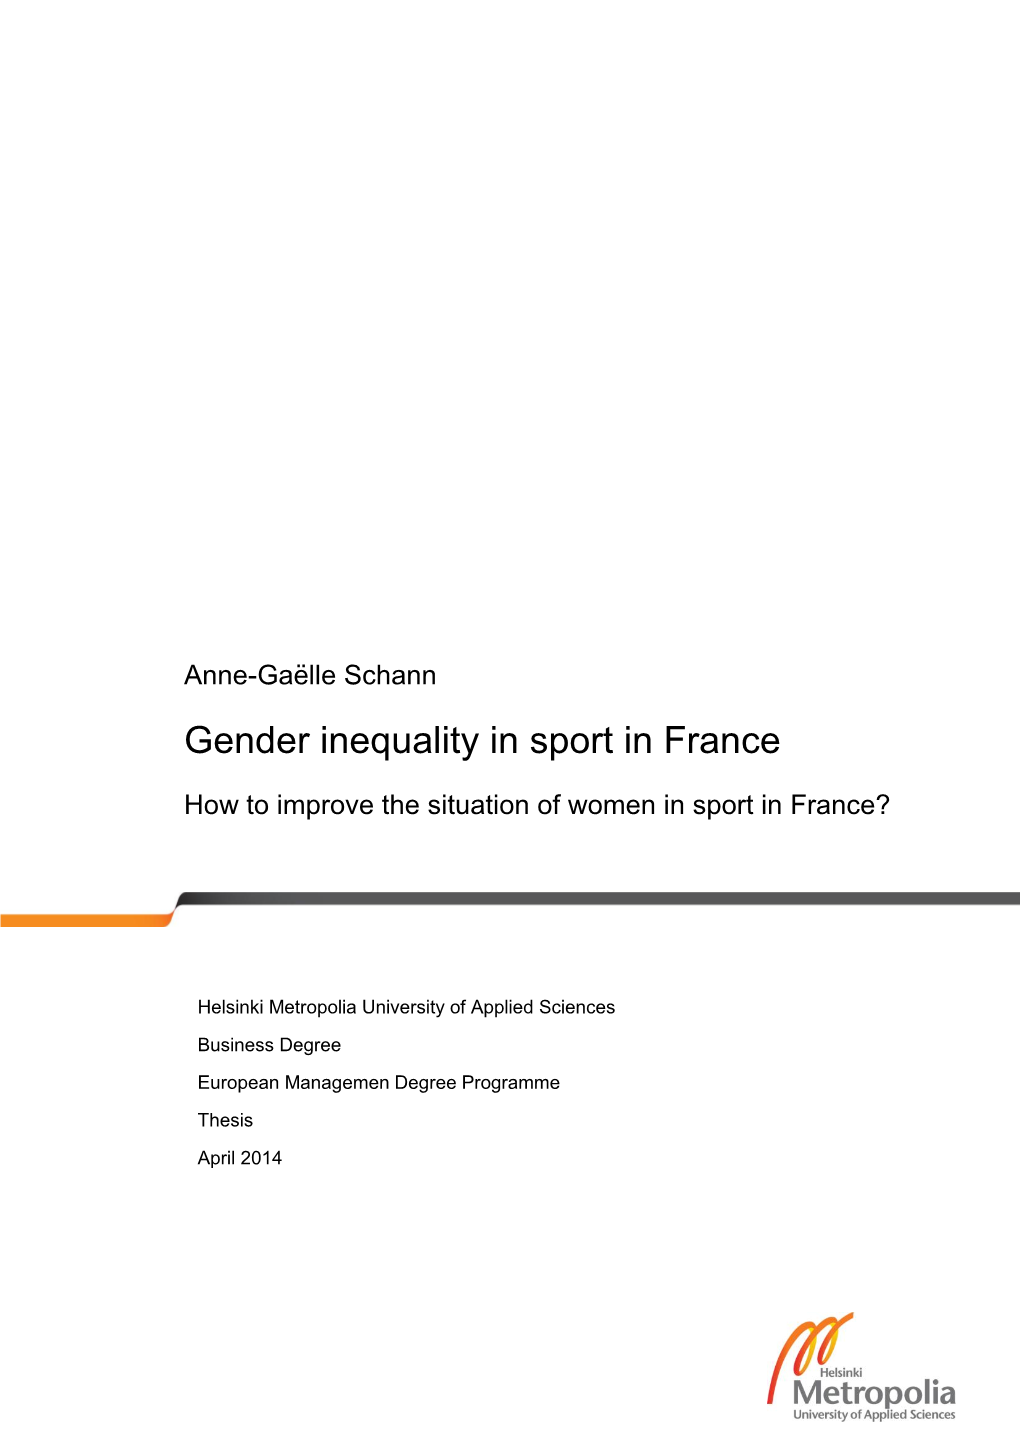 Gender Inequality in Sport in France